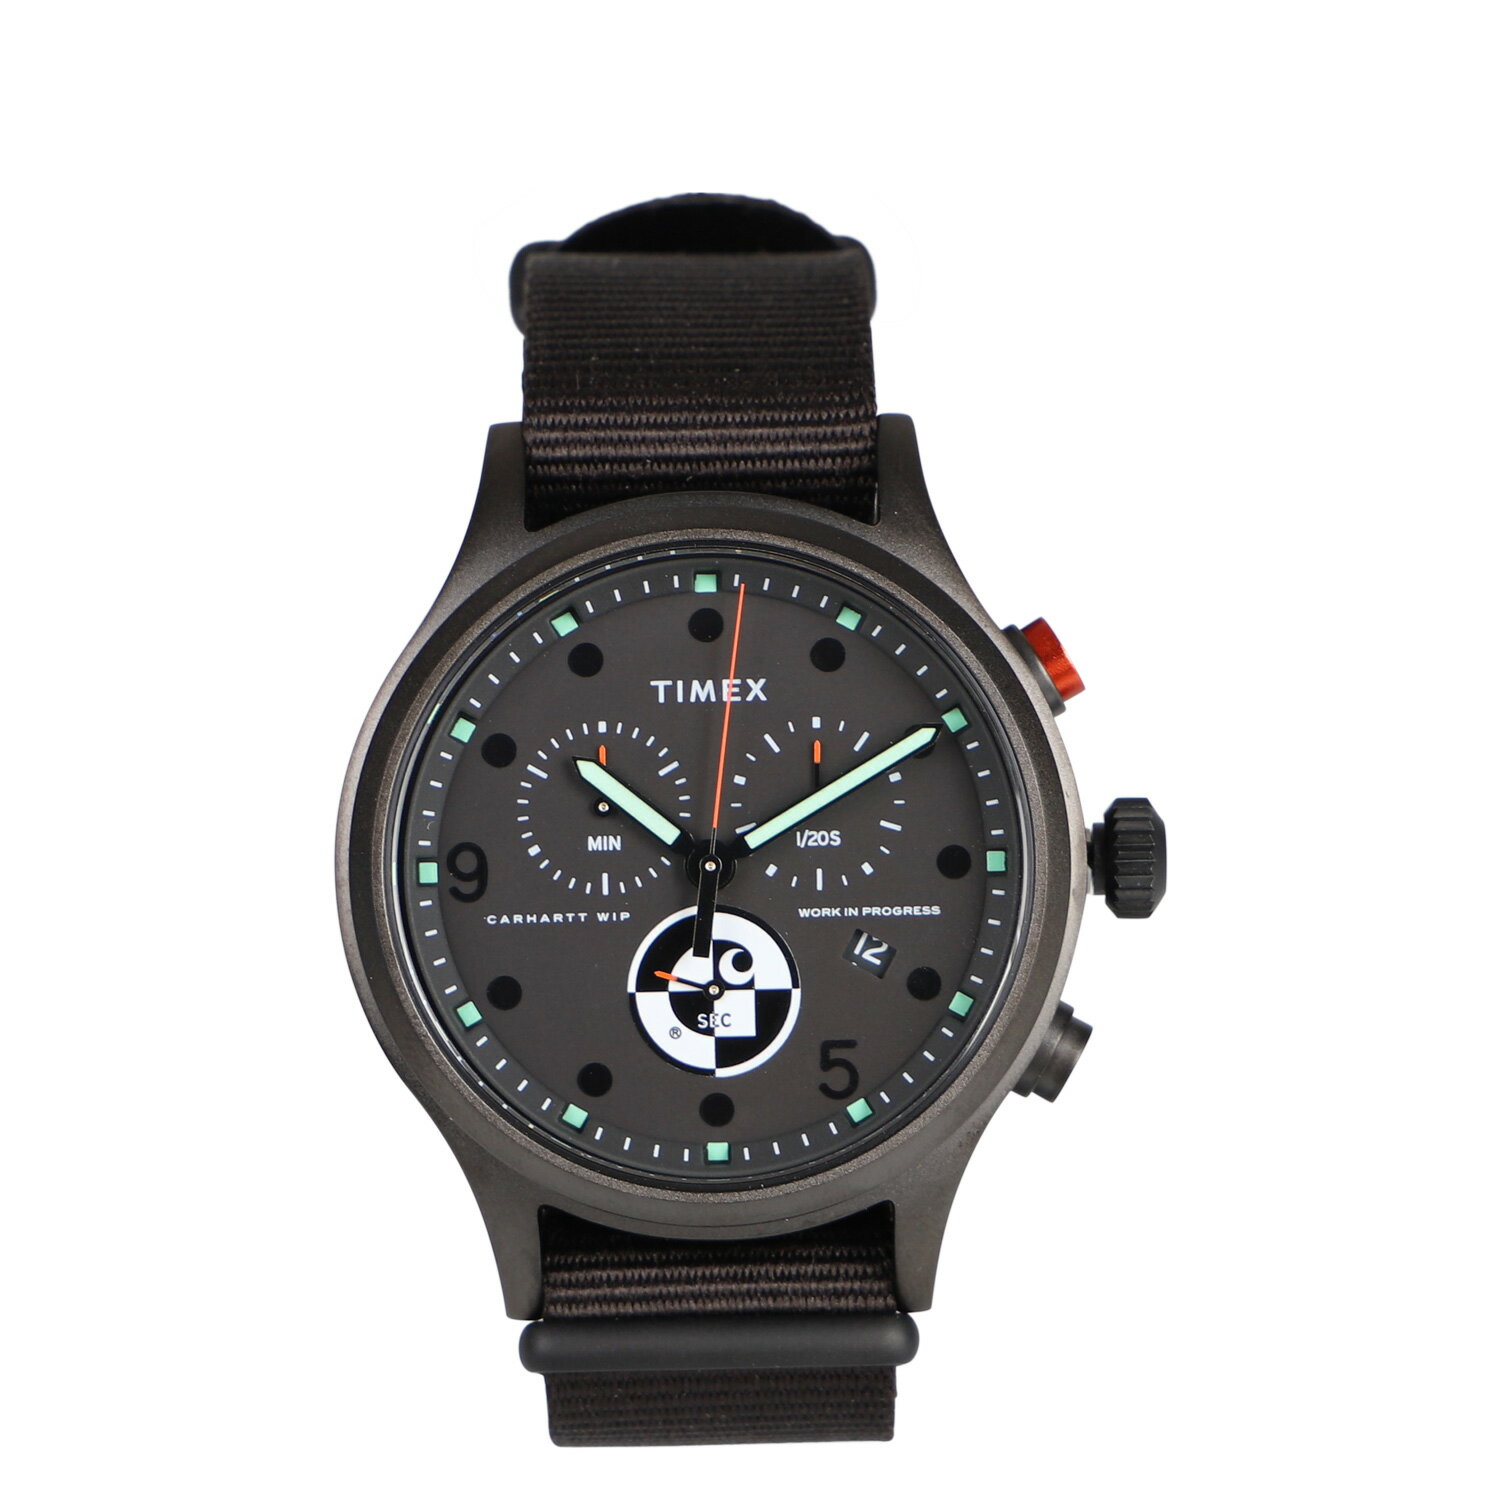 carhartt WIP TIMEX カーハート 腕時計 アライド クロノライド メンズ コラボレーションモデル ベルト 付け替え C ALLIED CHRONOGRAPH ブラック 黒 I029862